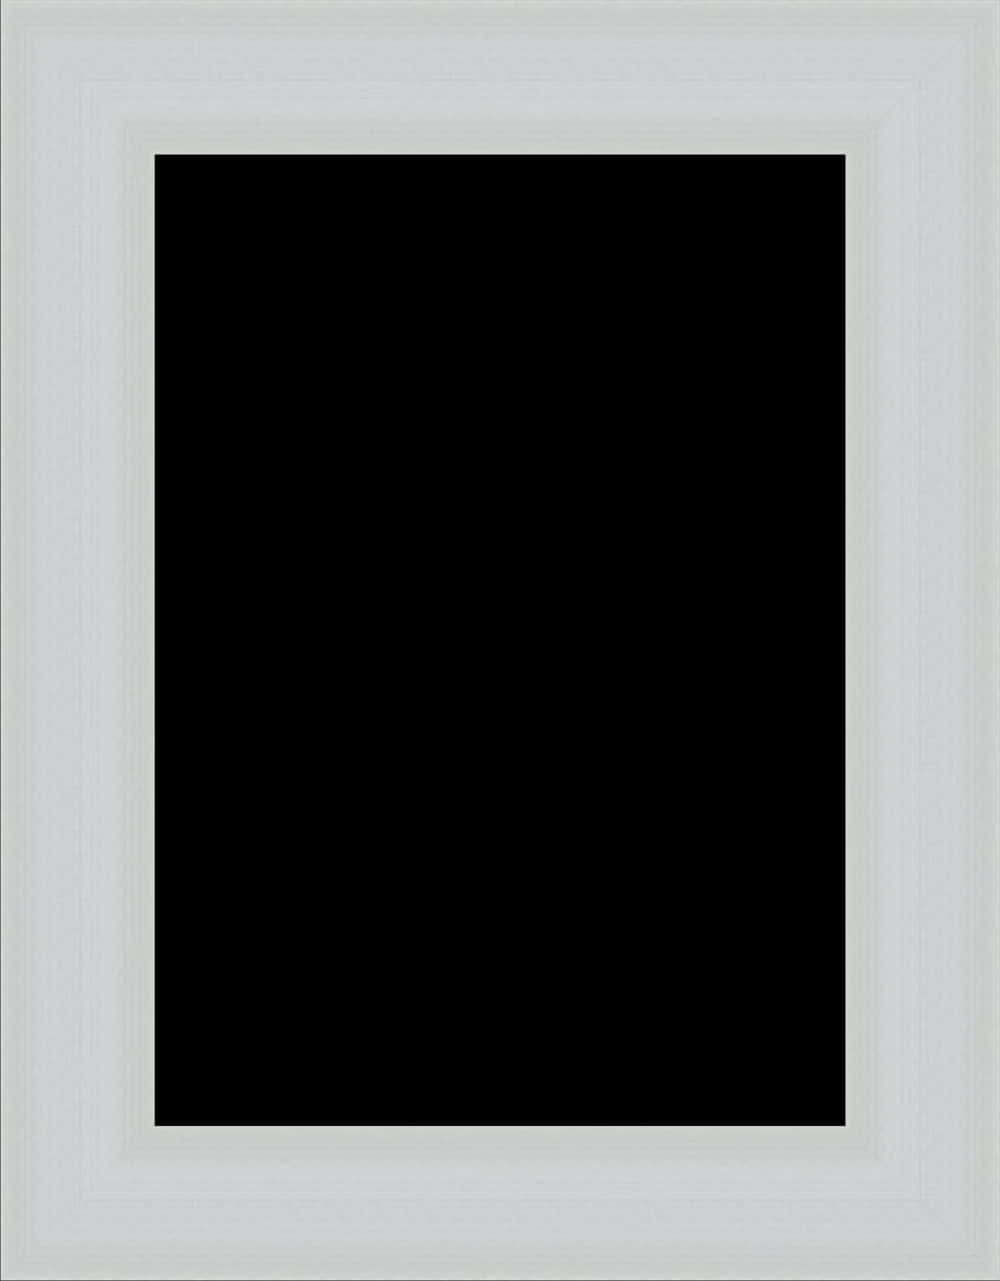 White Framed Black Canvas